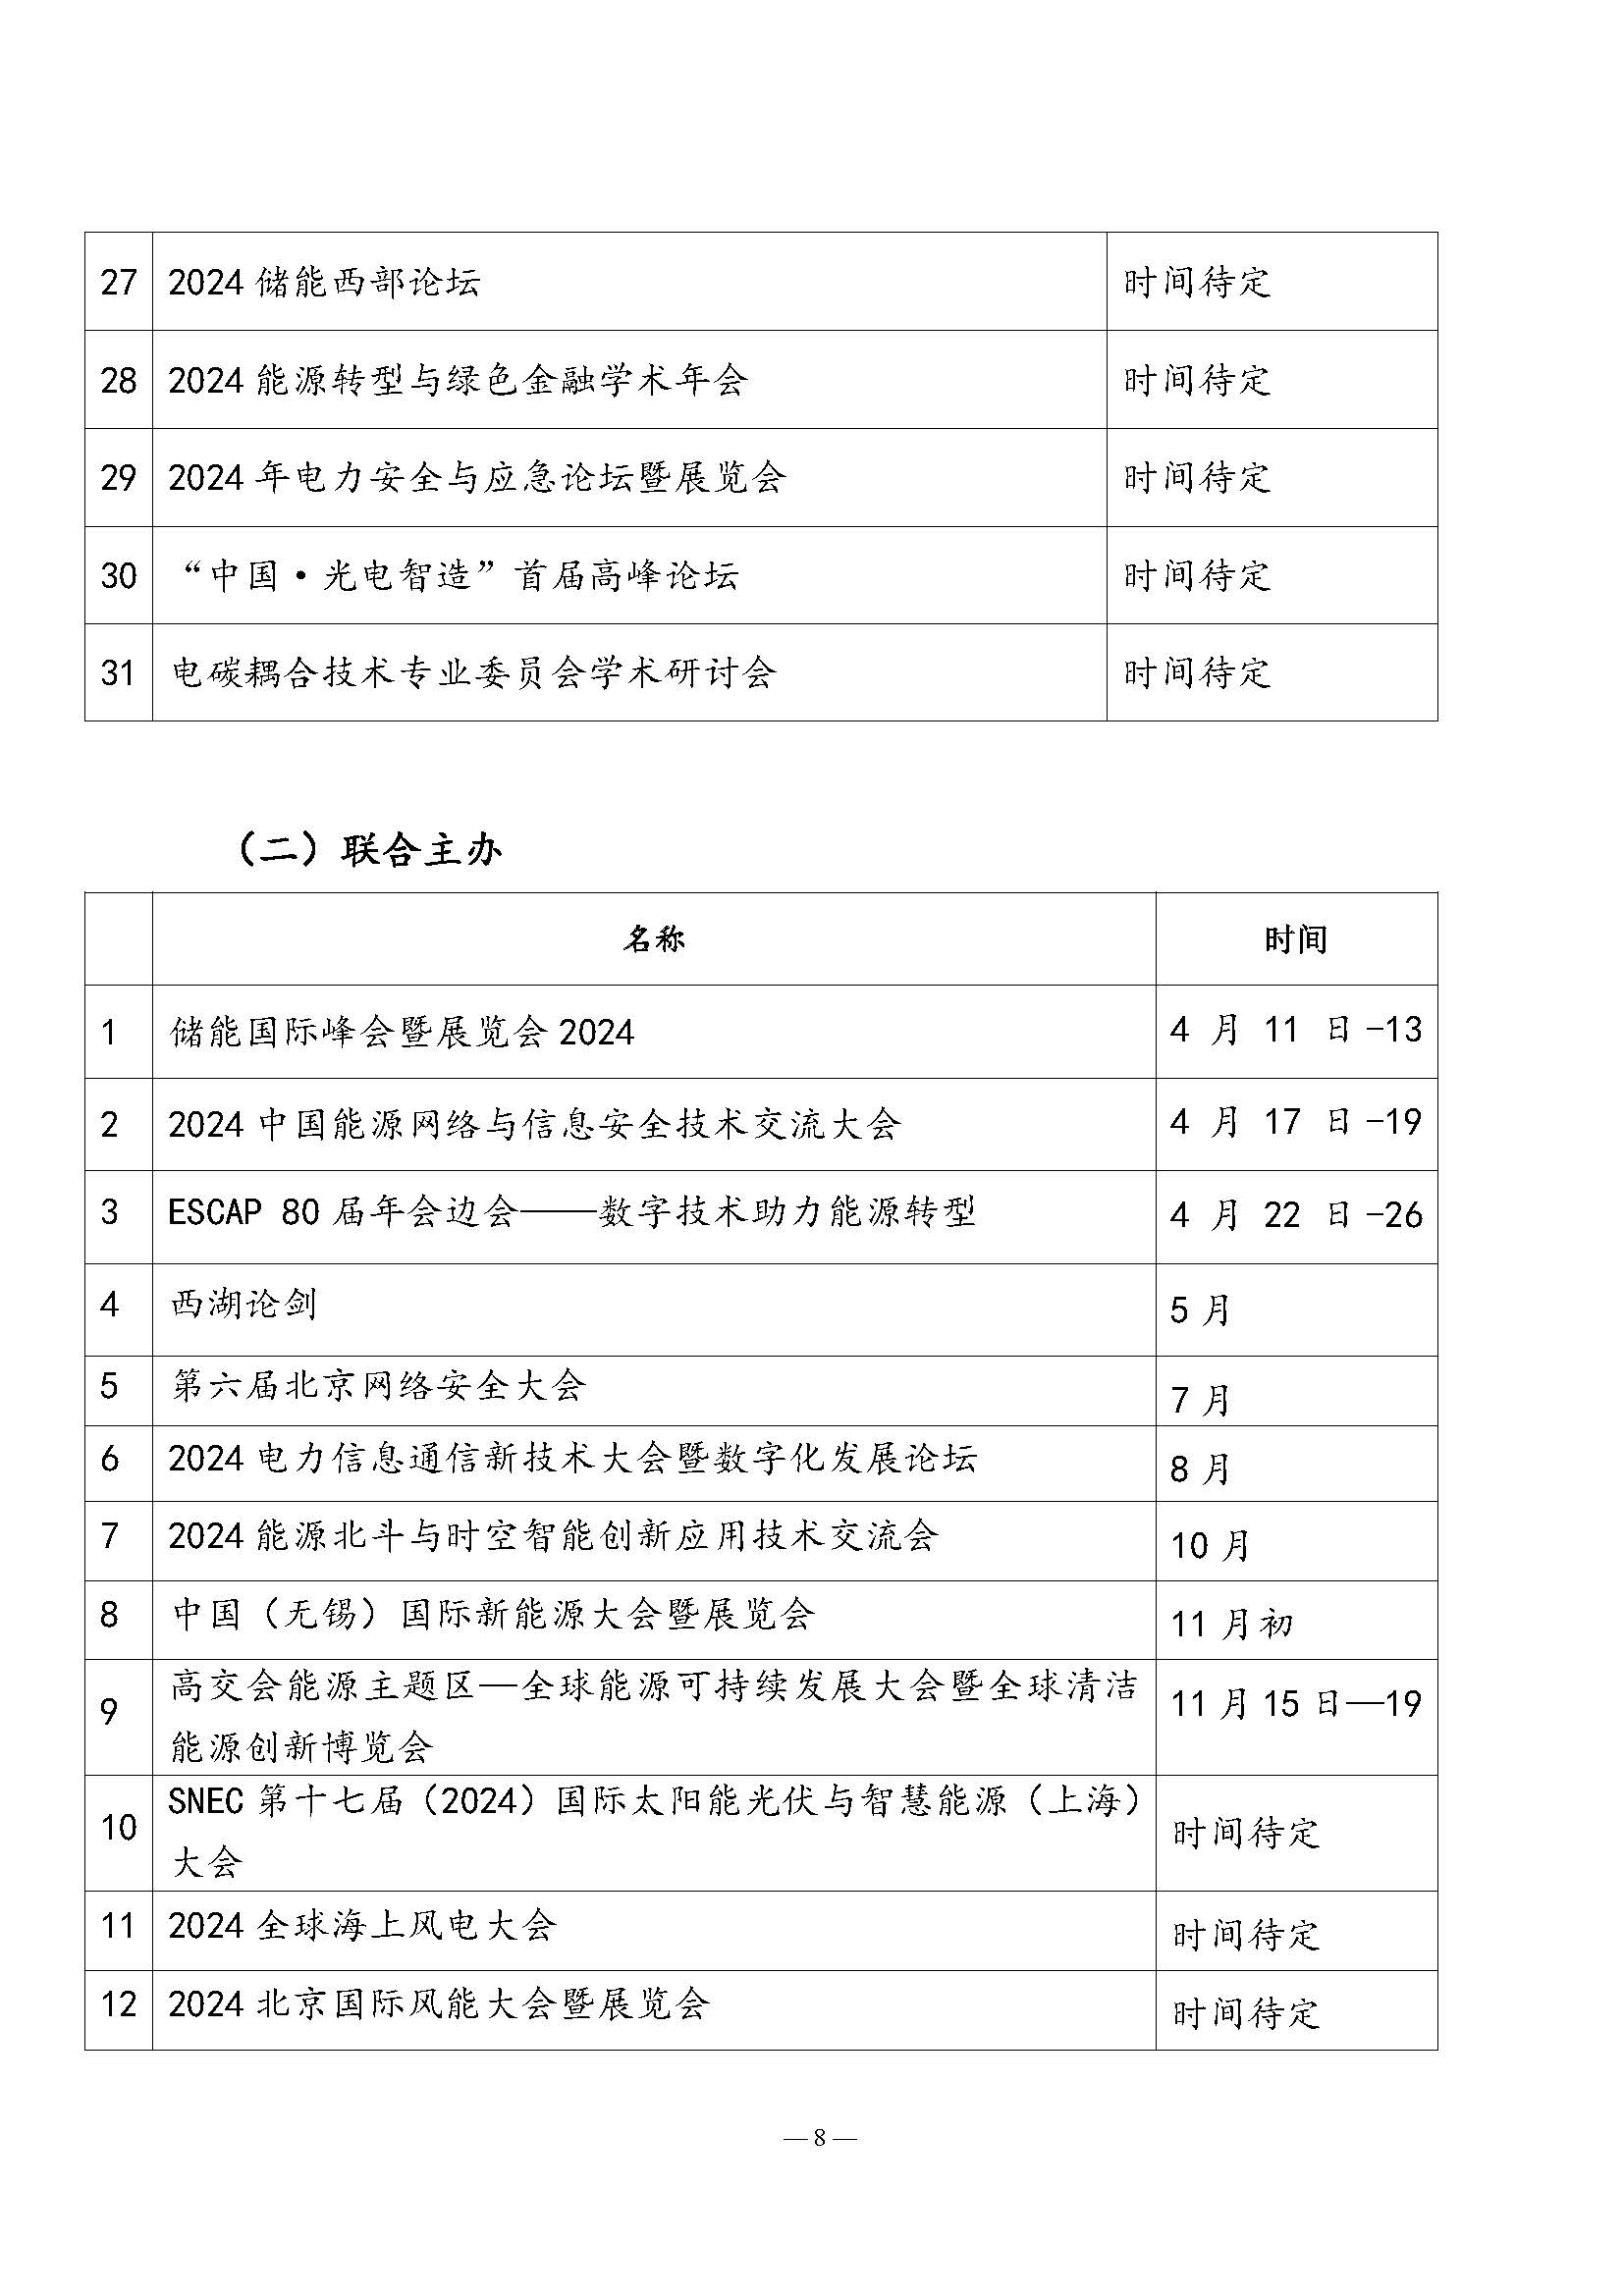 中国能源研究会2023年学术活动和项目汇总(3)_页面_8.jpg